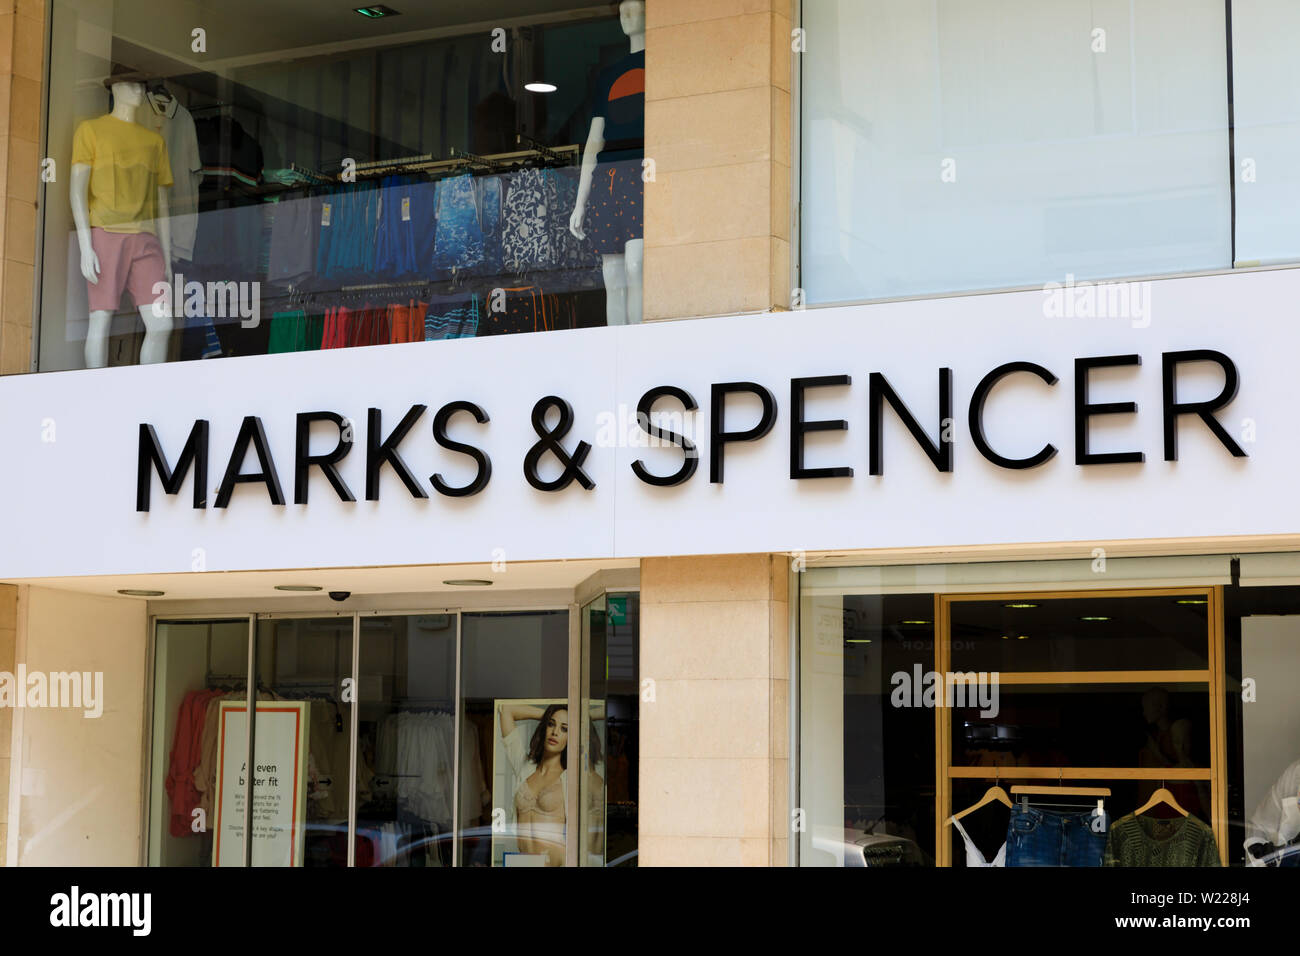 Cypriot Marks and Spencer store, Zinonos Kitieos Street, Larnaca, Cyprus june 2019 Stock Photo